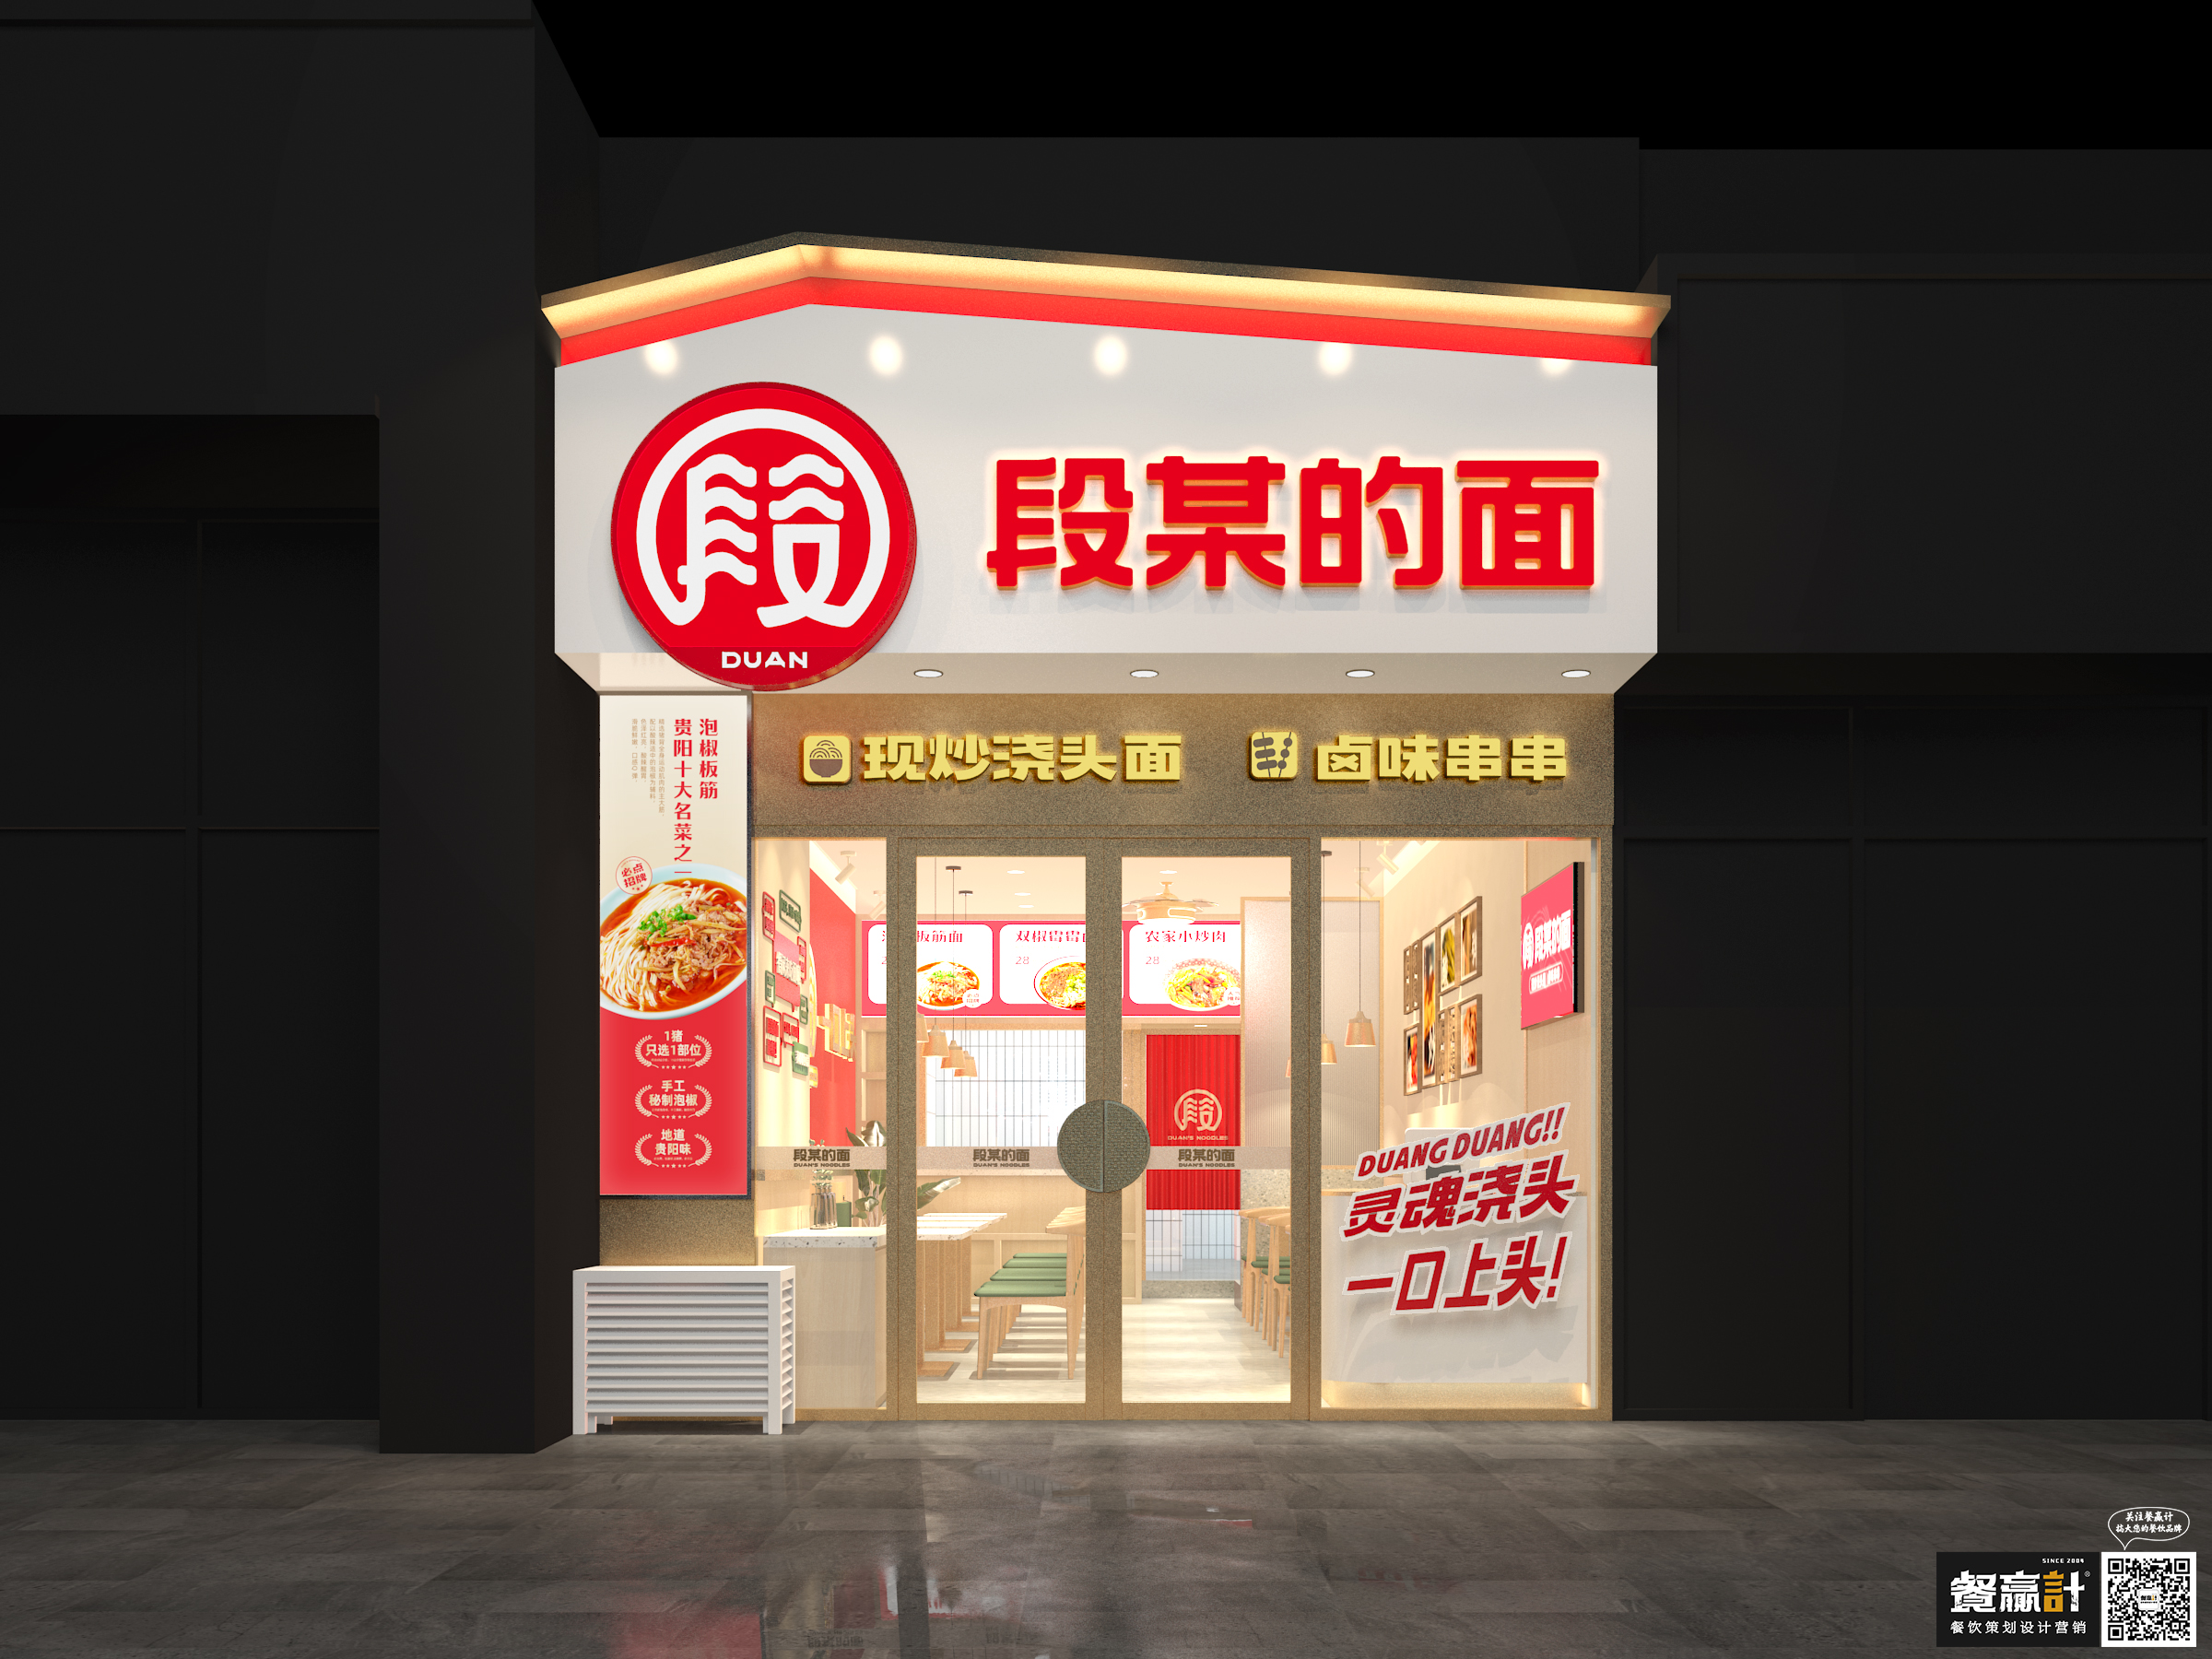 潮州段某的面——贵阳粉面品牌餐饮空间设计